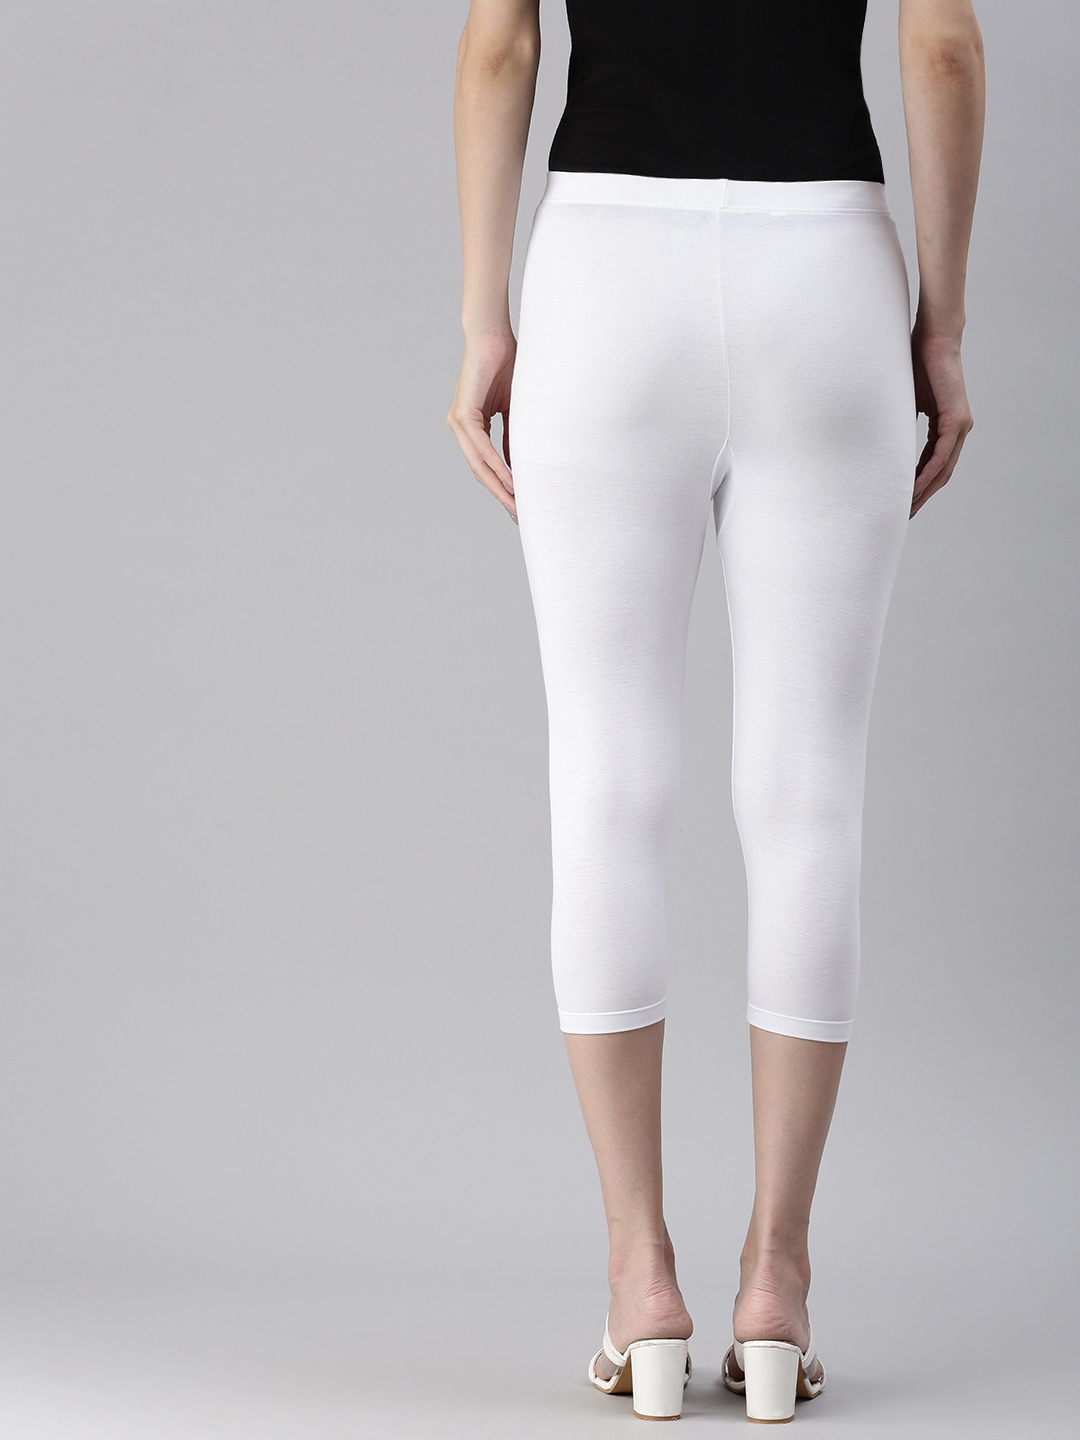 Buy Women Basic Solid Color Cotton Capri Length Leggings White at